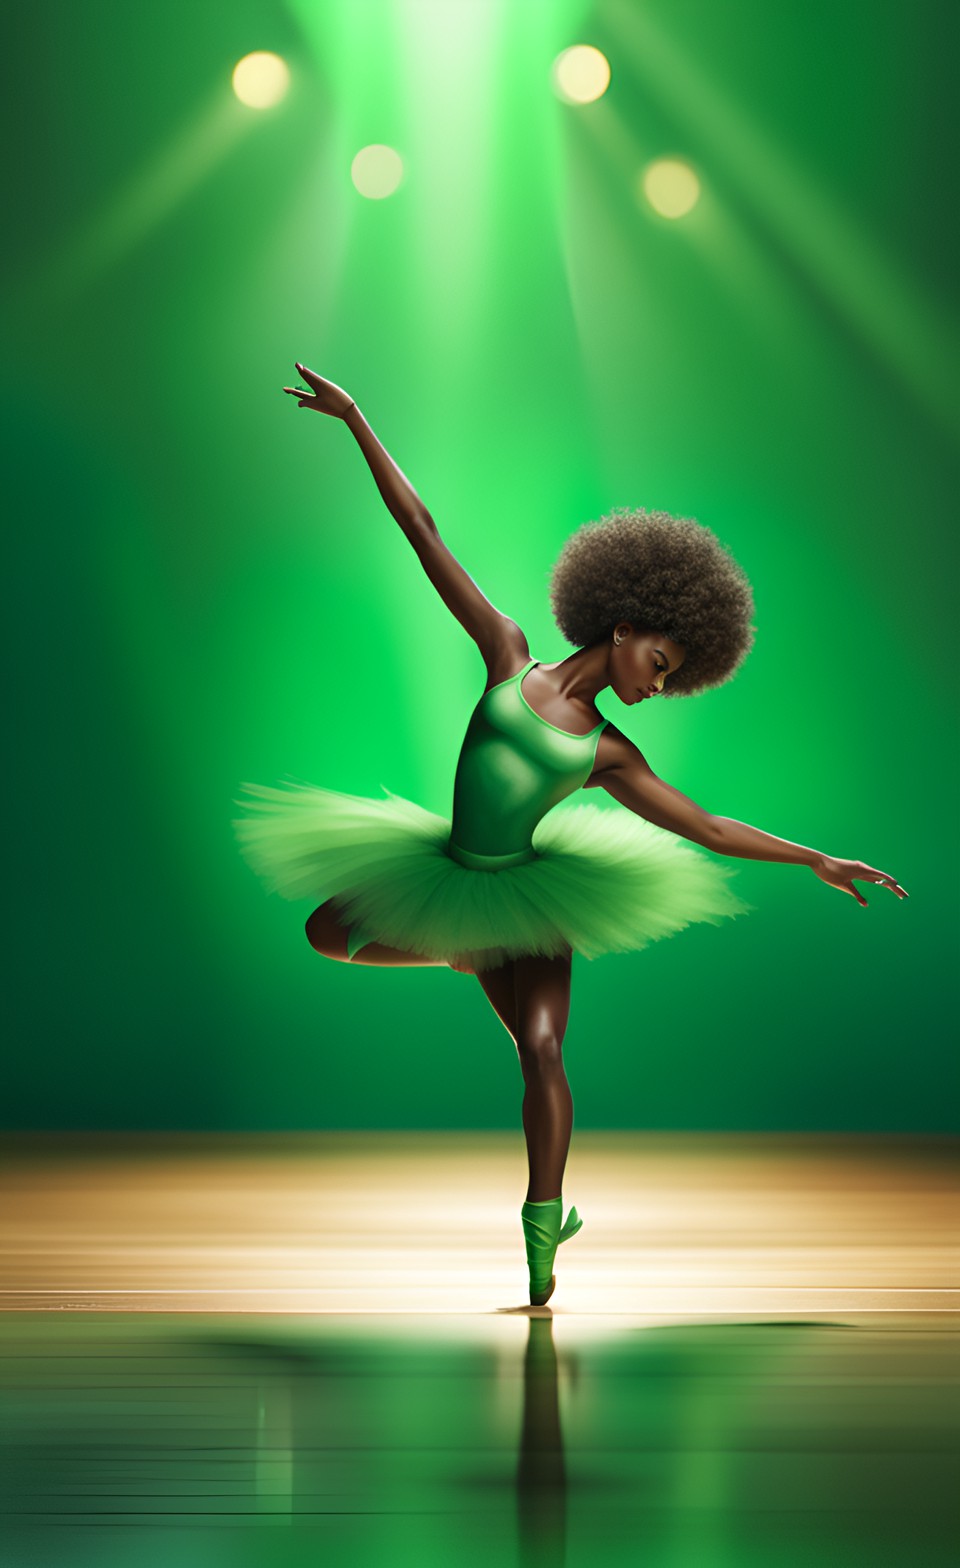 Jamaican magical ballet dancer Jamai227